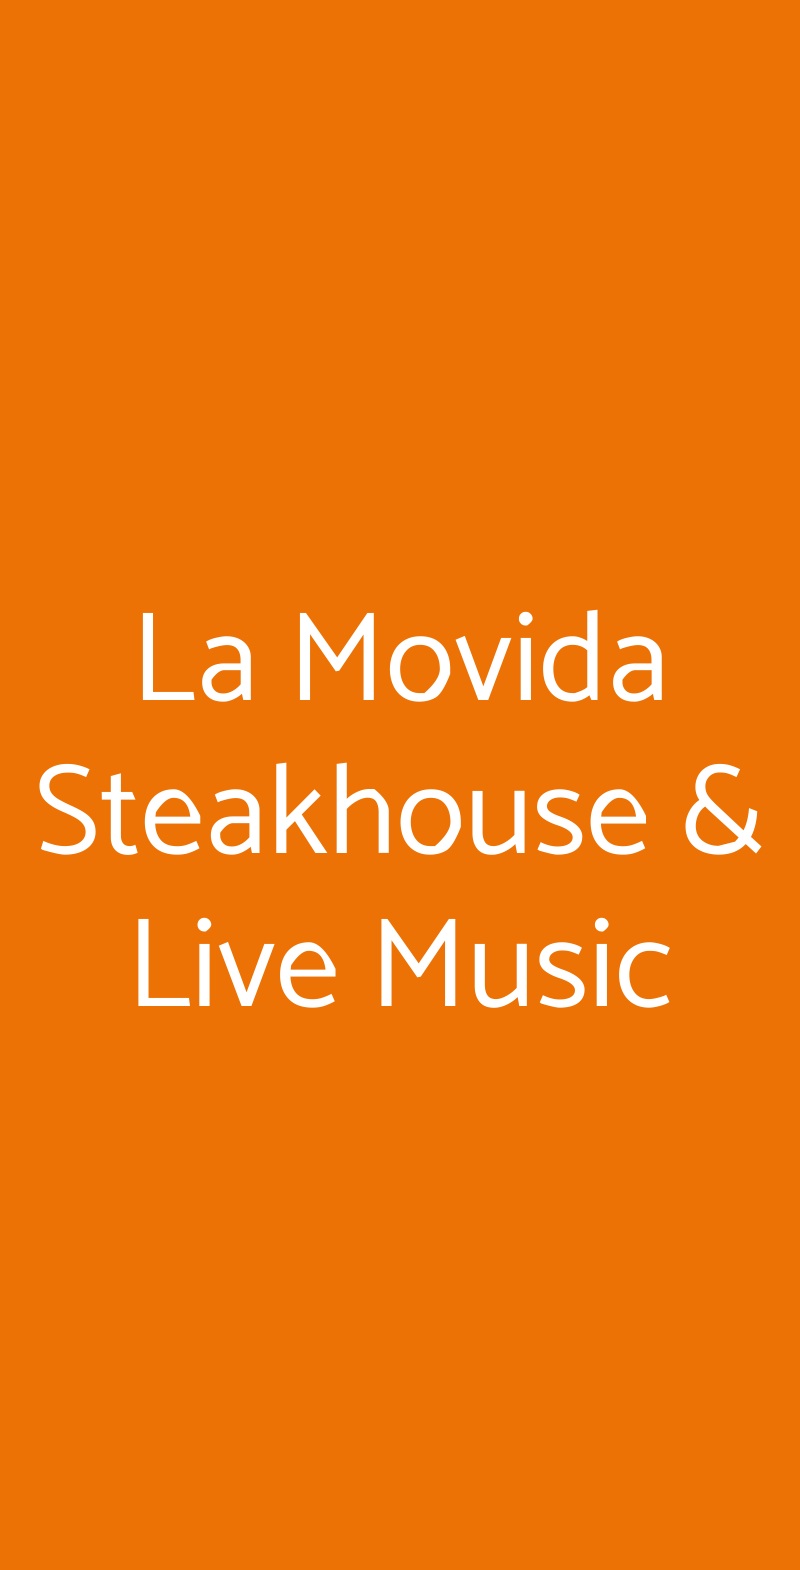 La Movida Steakhouse & Live Music Rezzato menù 1 pagina